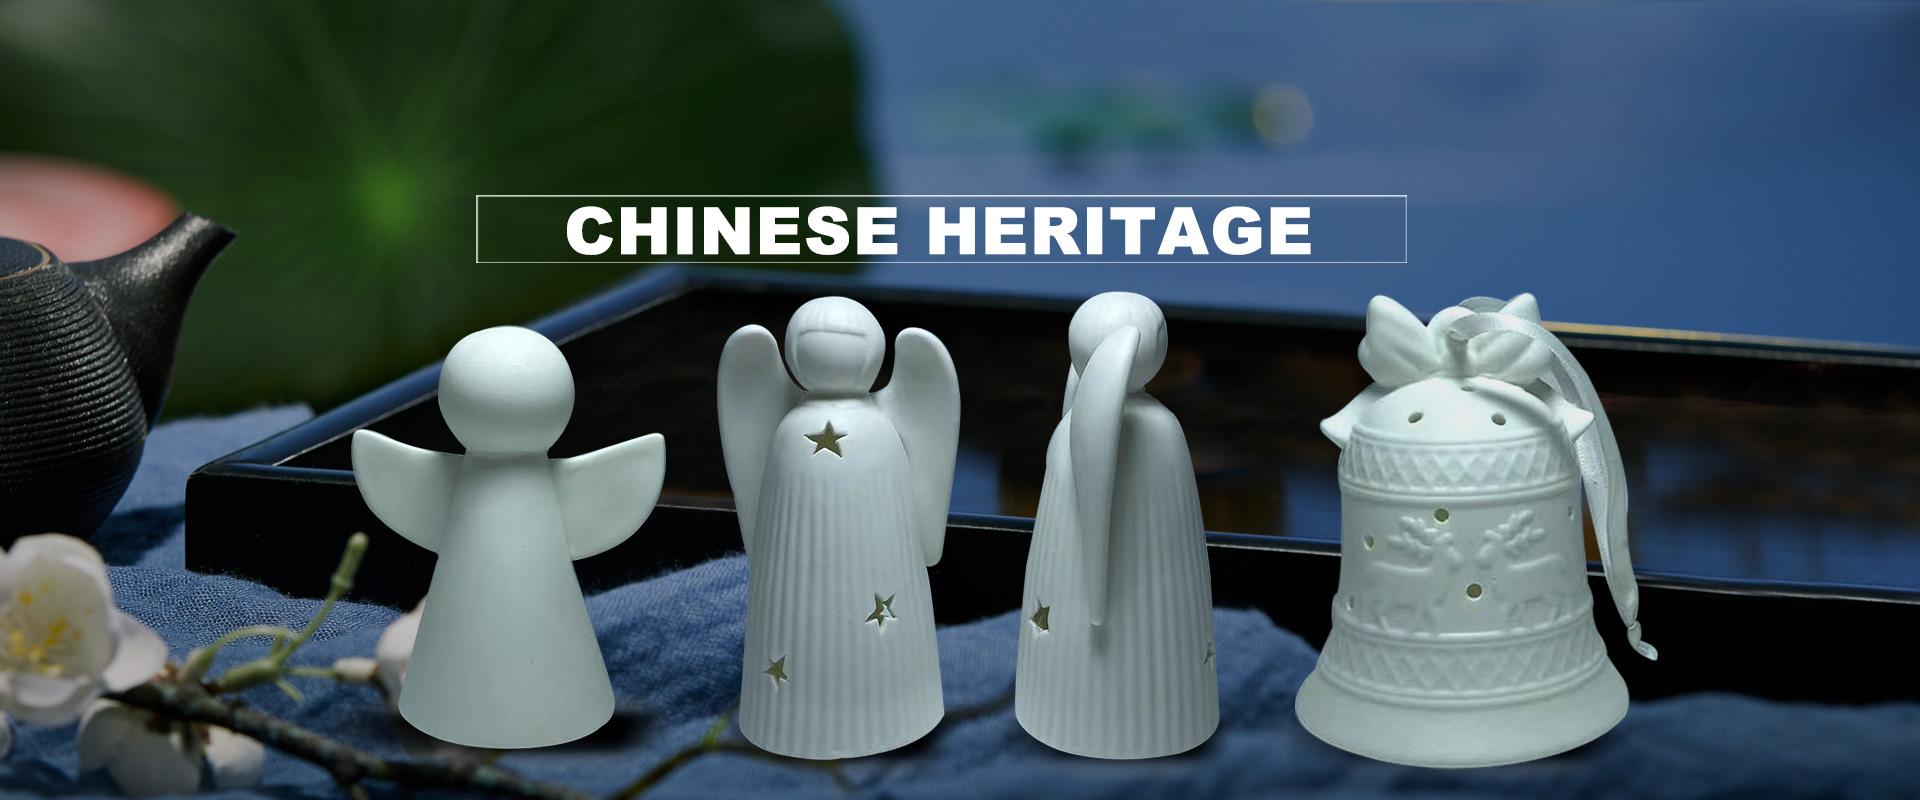 Chinese heritage